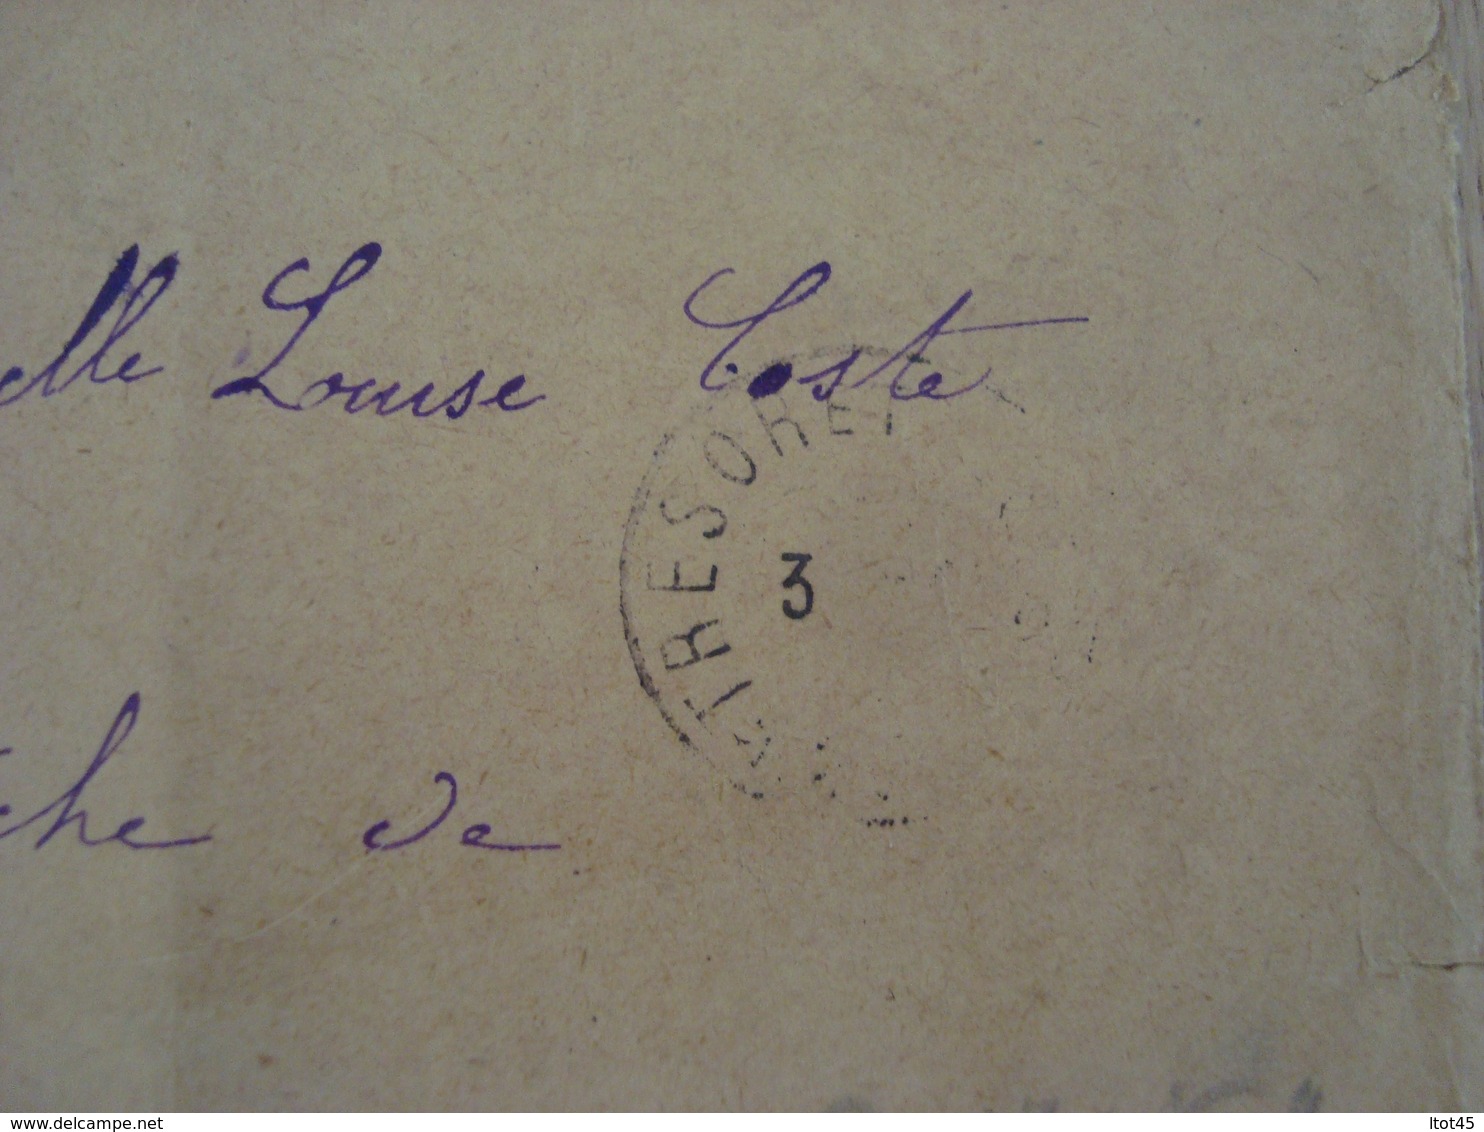 LETTRE + ENVELOPPE 31 MARS 1917 LETTRE CODEE - Documents Historiques